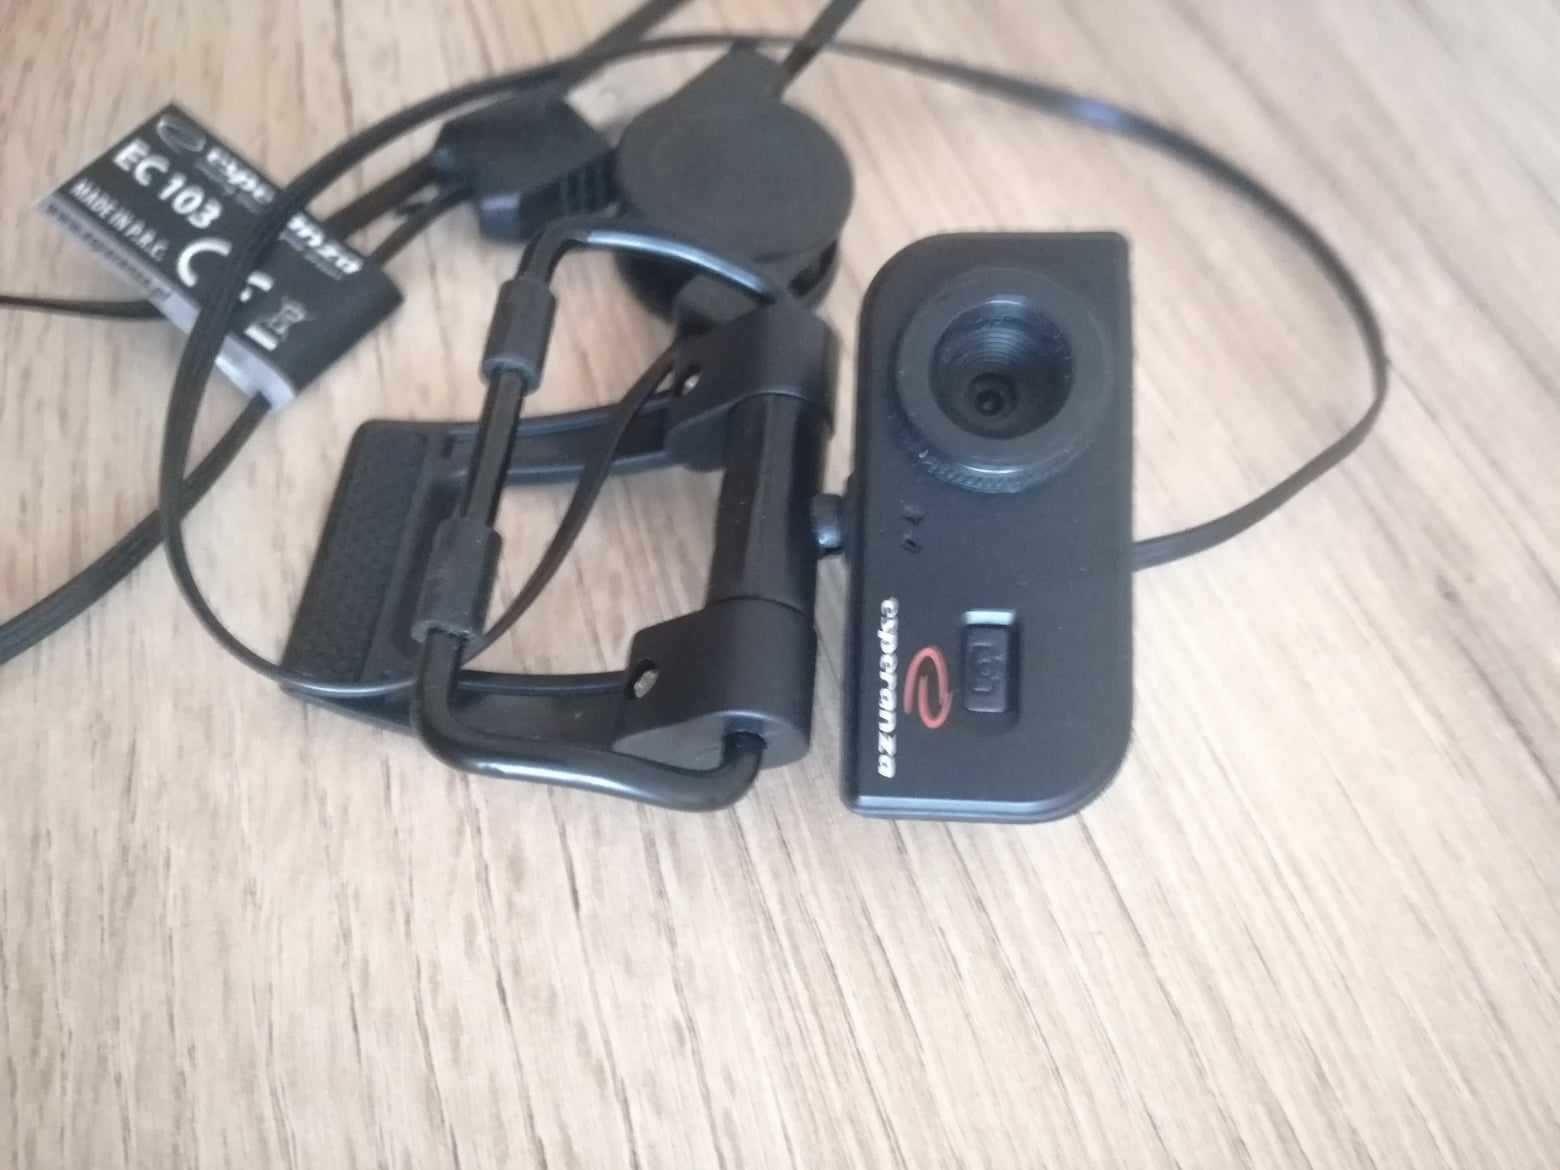 Kamera internetowa z mikrofonem Esperanza EC103 USB